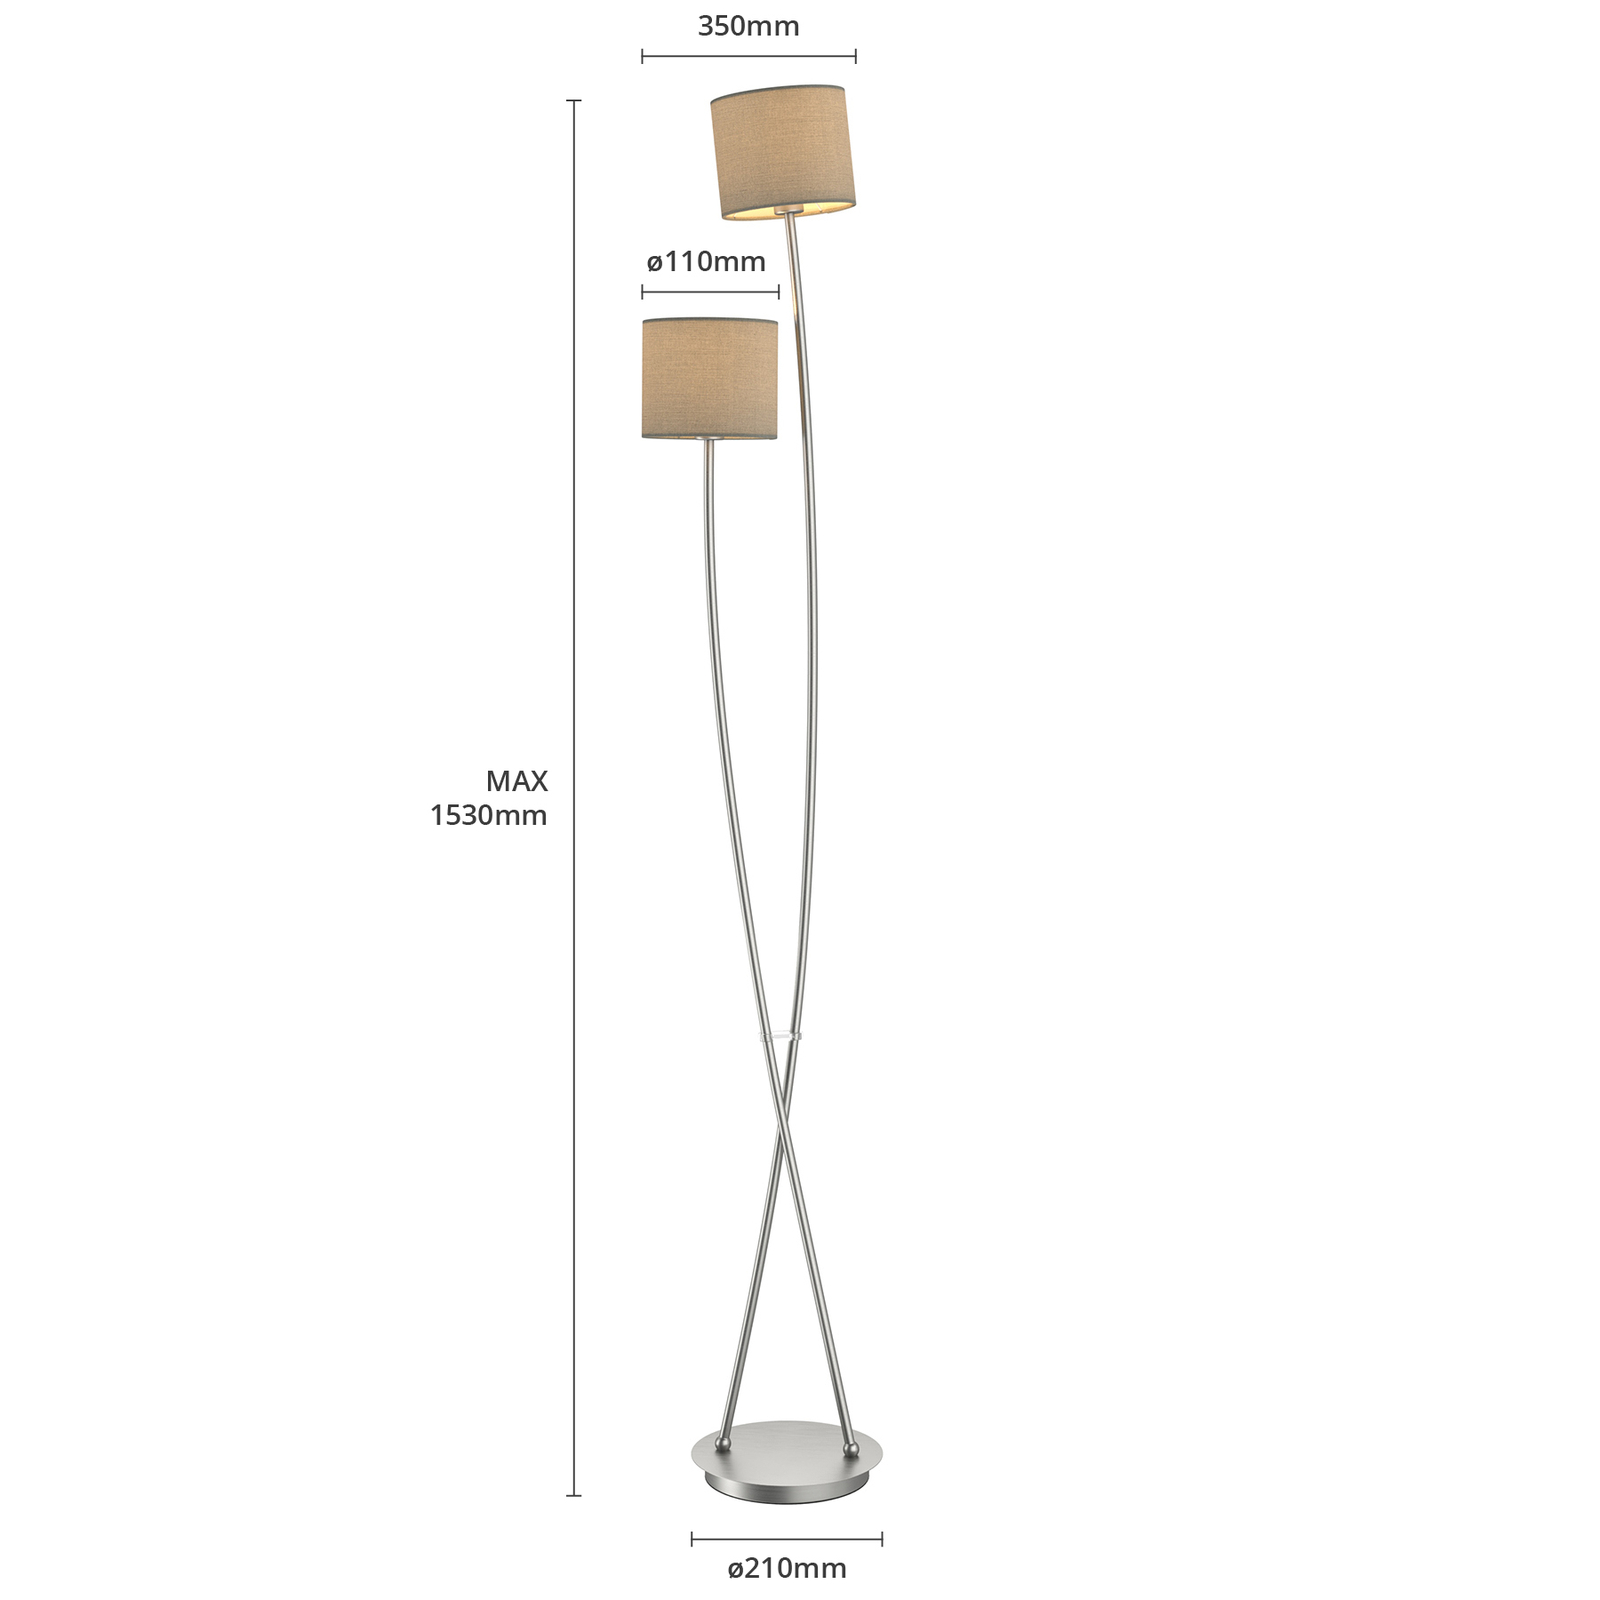 Juljana floor lamp, 2-bulb, fabric lampshades